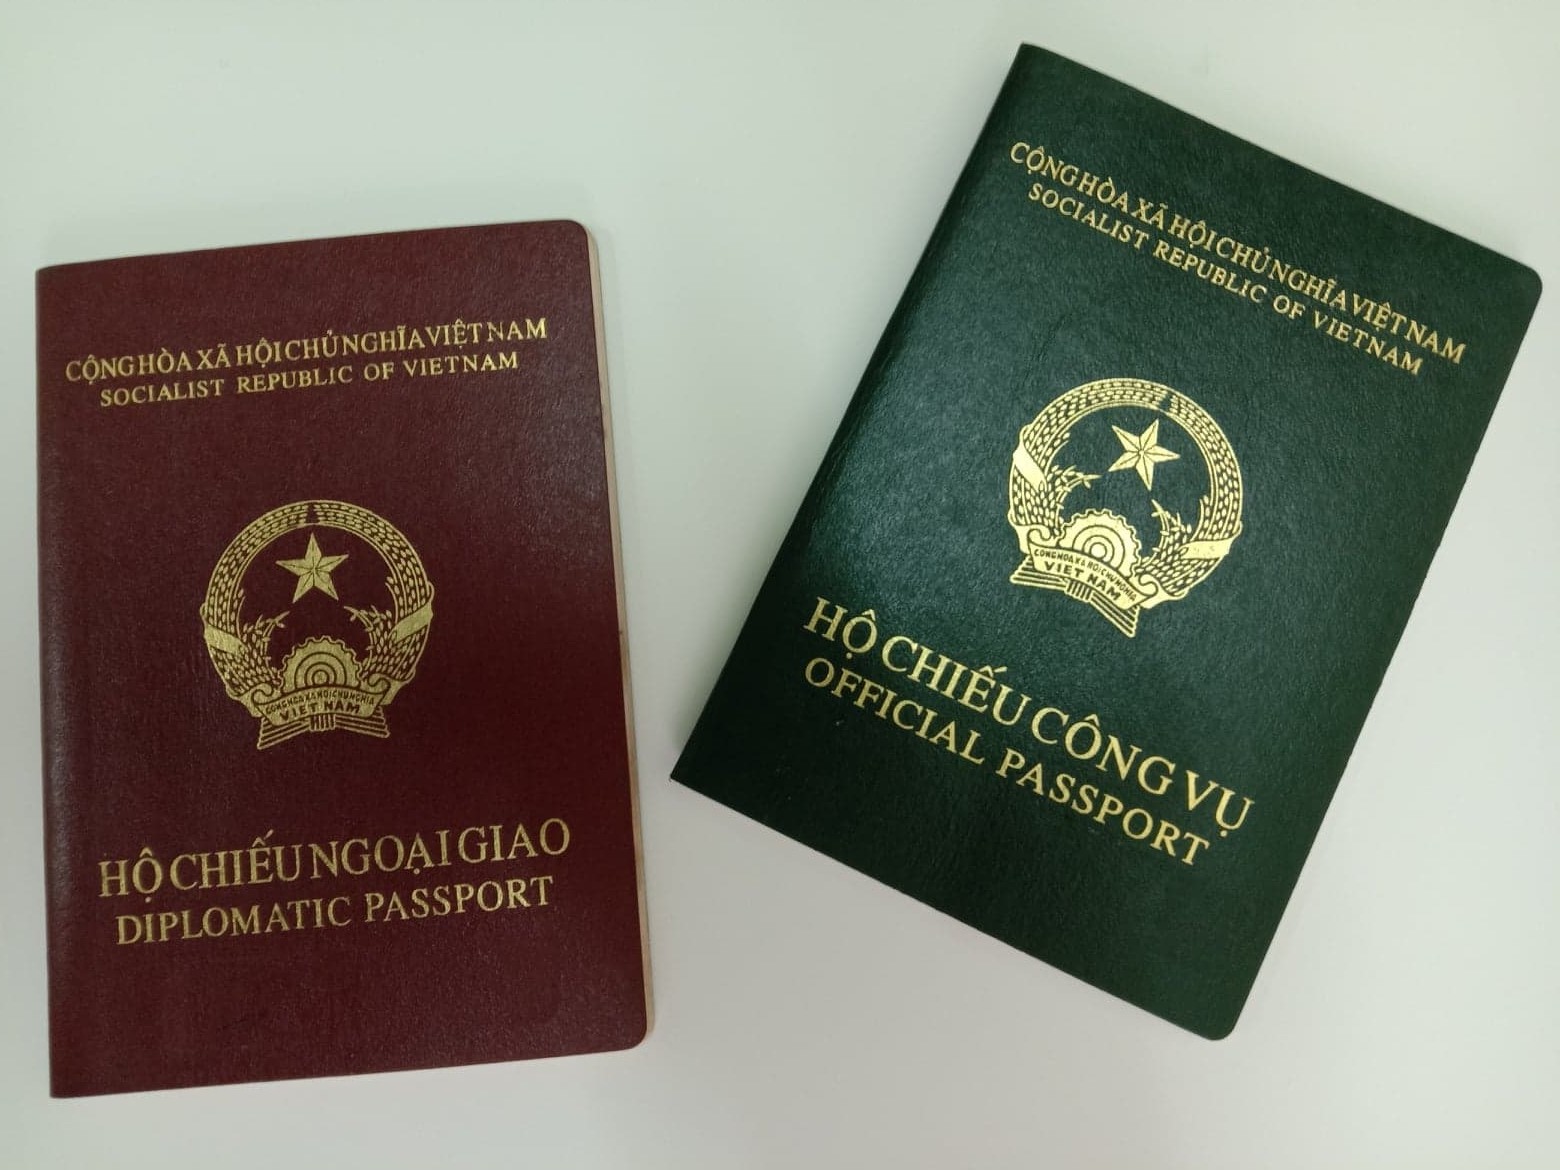 Hướng dẫn đề nghị cấp hộ chiếu ngoại giao, hộ chiếu công vụ ở nước ngoài